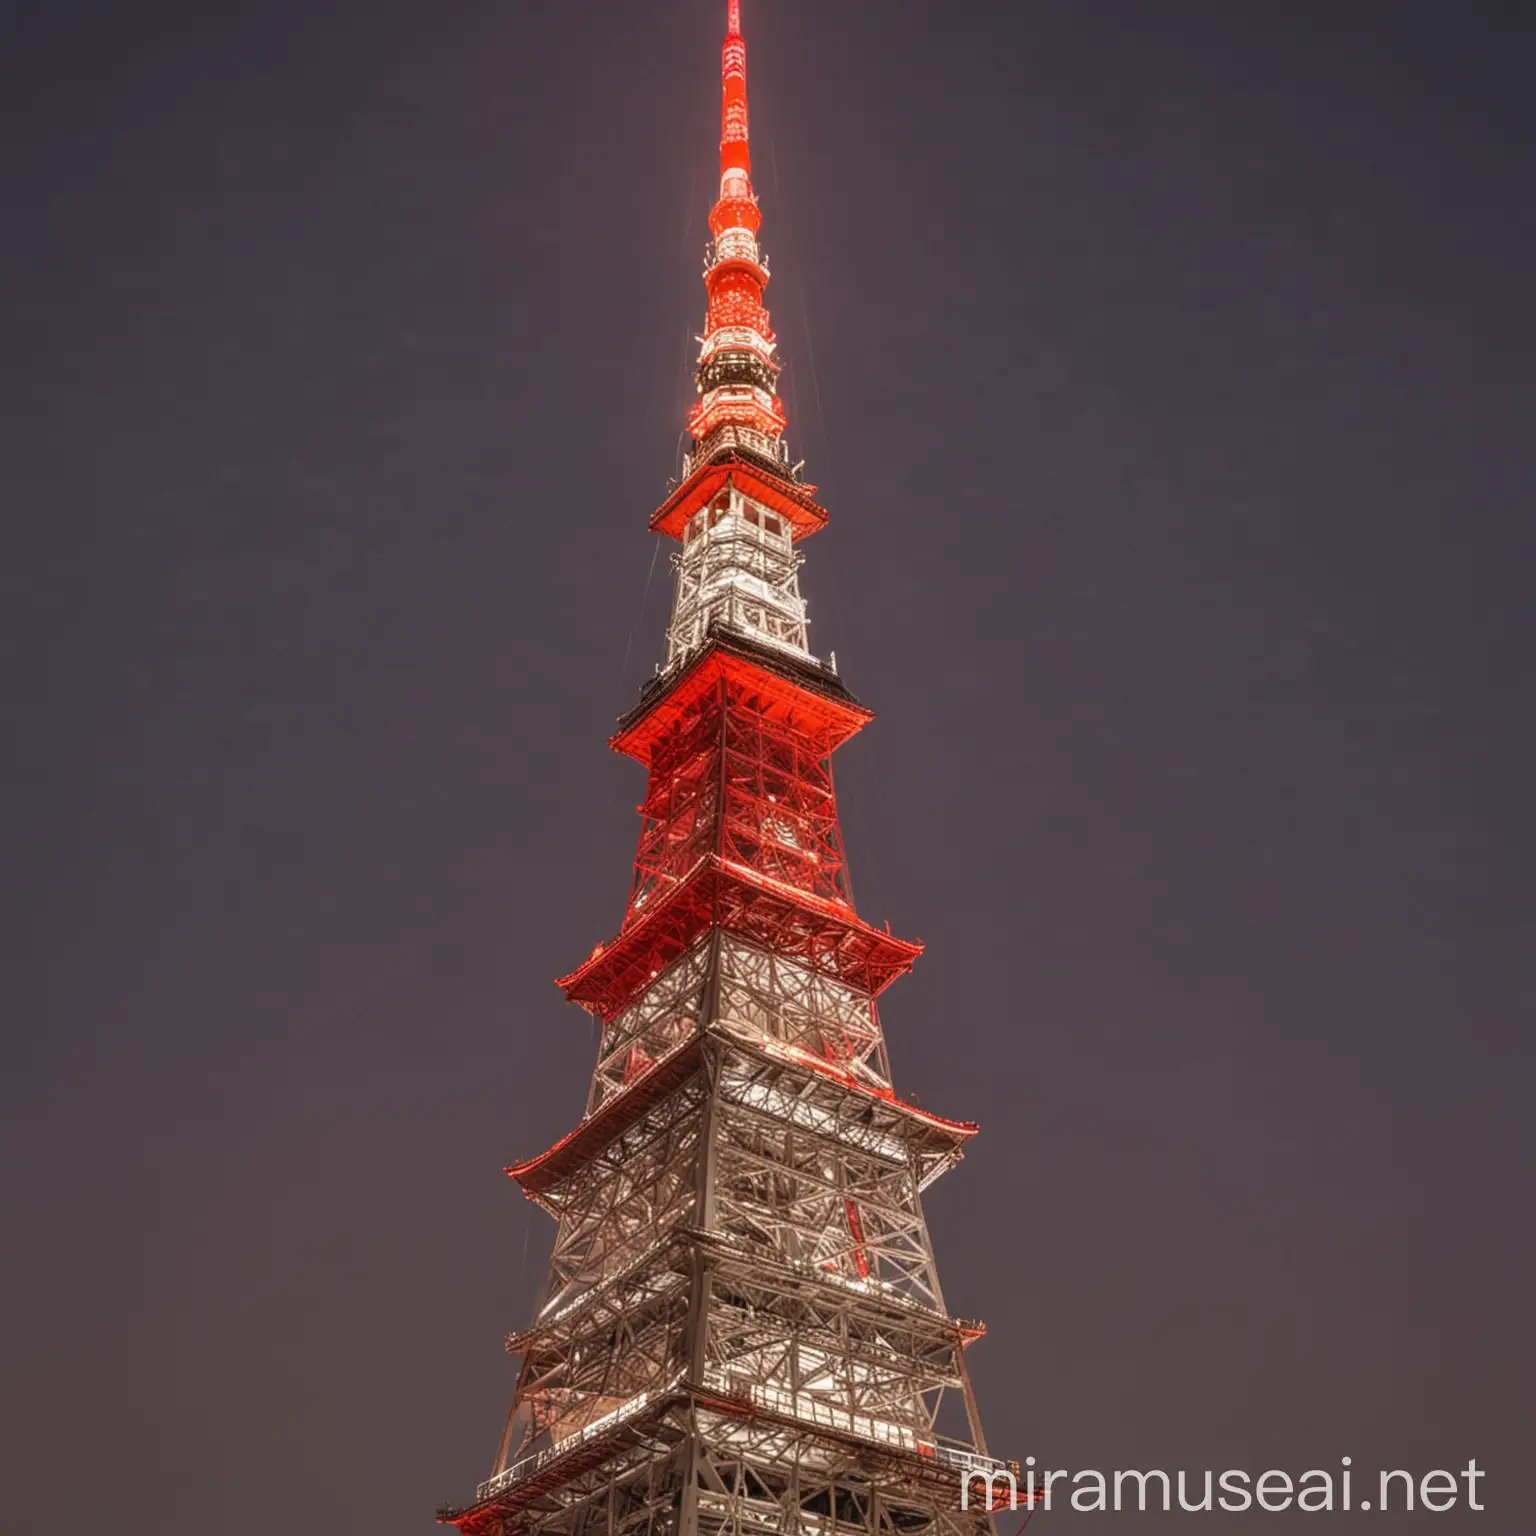 建於在東京的一座高於332.9公尺的鐵塔。是日本第二高的建築，顏色有白、紅
形狀是長長瘦瘦的樣子。
是日本打完二次大戰的鐵塔，代表著韌性和戰後繁榮的象徵。
照明時間為日落到午夜
0點之間。燈光顏色隨季節變化，夏季為白色，春、秋、冬季為橙色。
